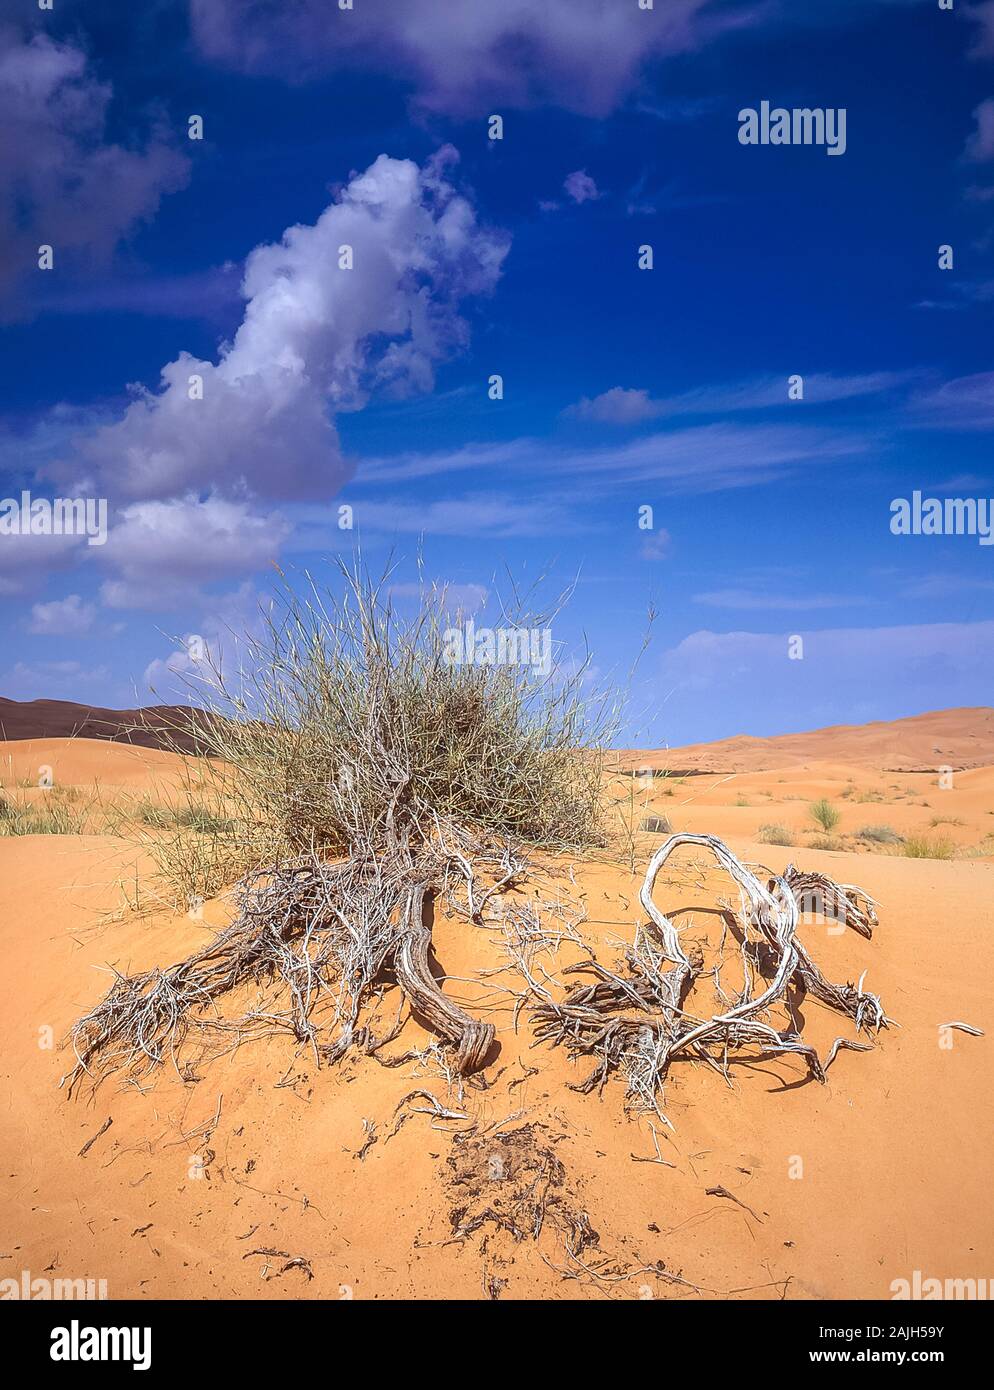 Dubaï. Magnifique paysage désertique de dunes de sable naturelles et soufflées de vent près du village d'Al Dhid sur le bord de la route entre la ville de Dubaï et la forteresse rurale oasis ville de Hatta Banque D'Images